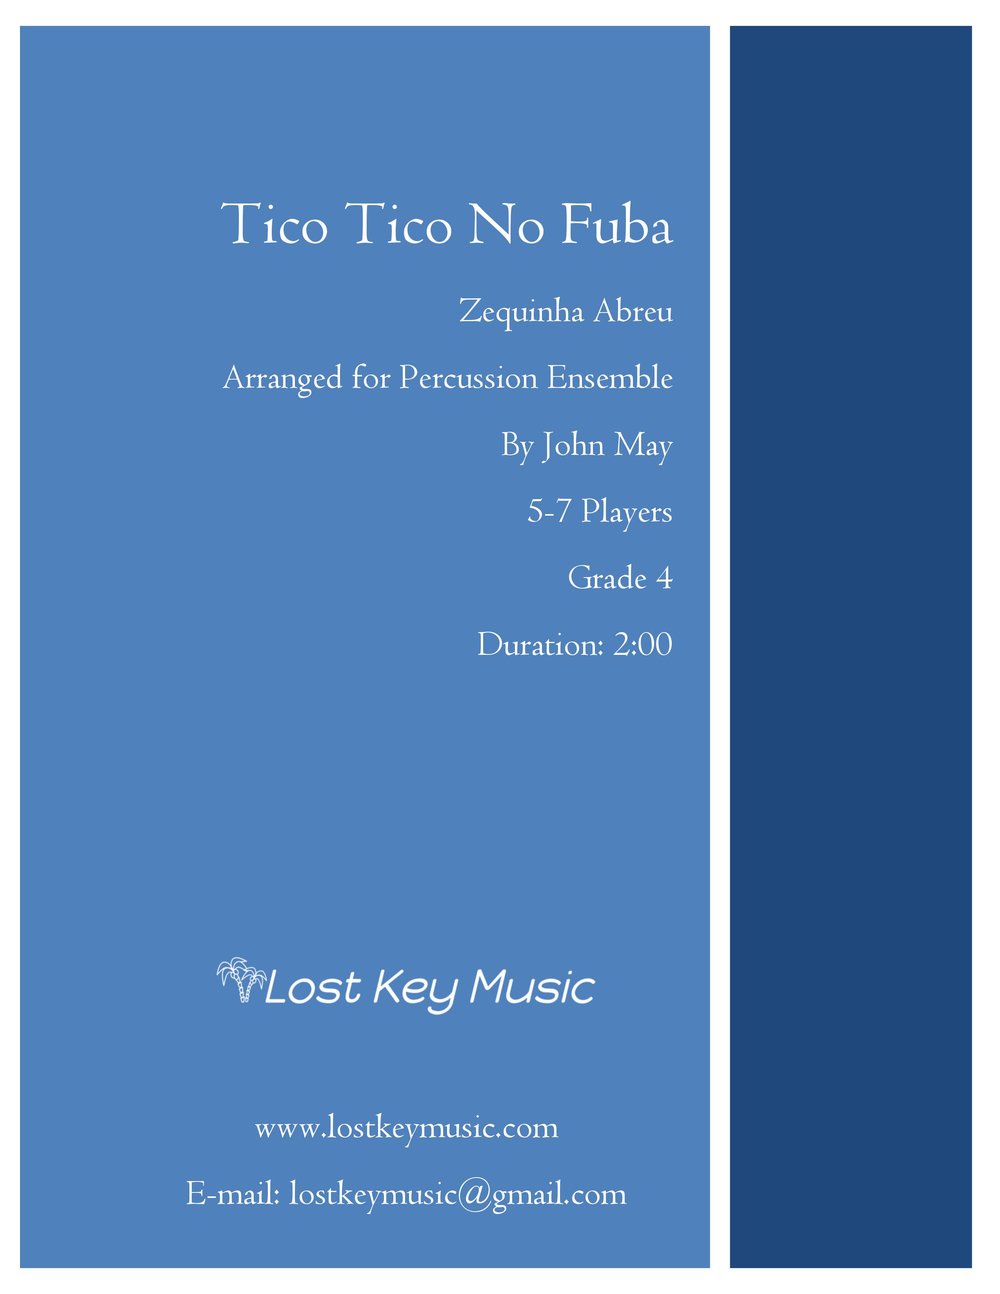 Tico Tico No Fuba - Percussion Ensemble (Shipped)